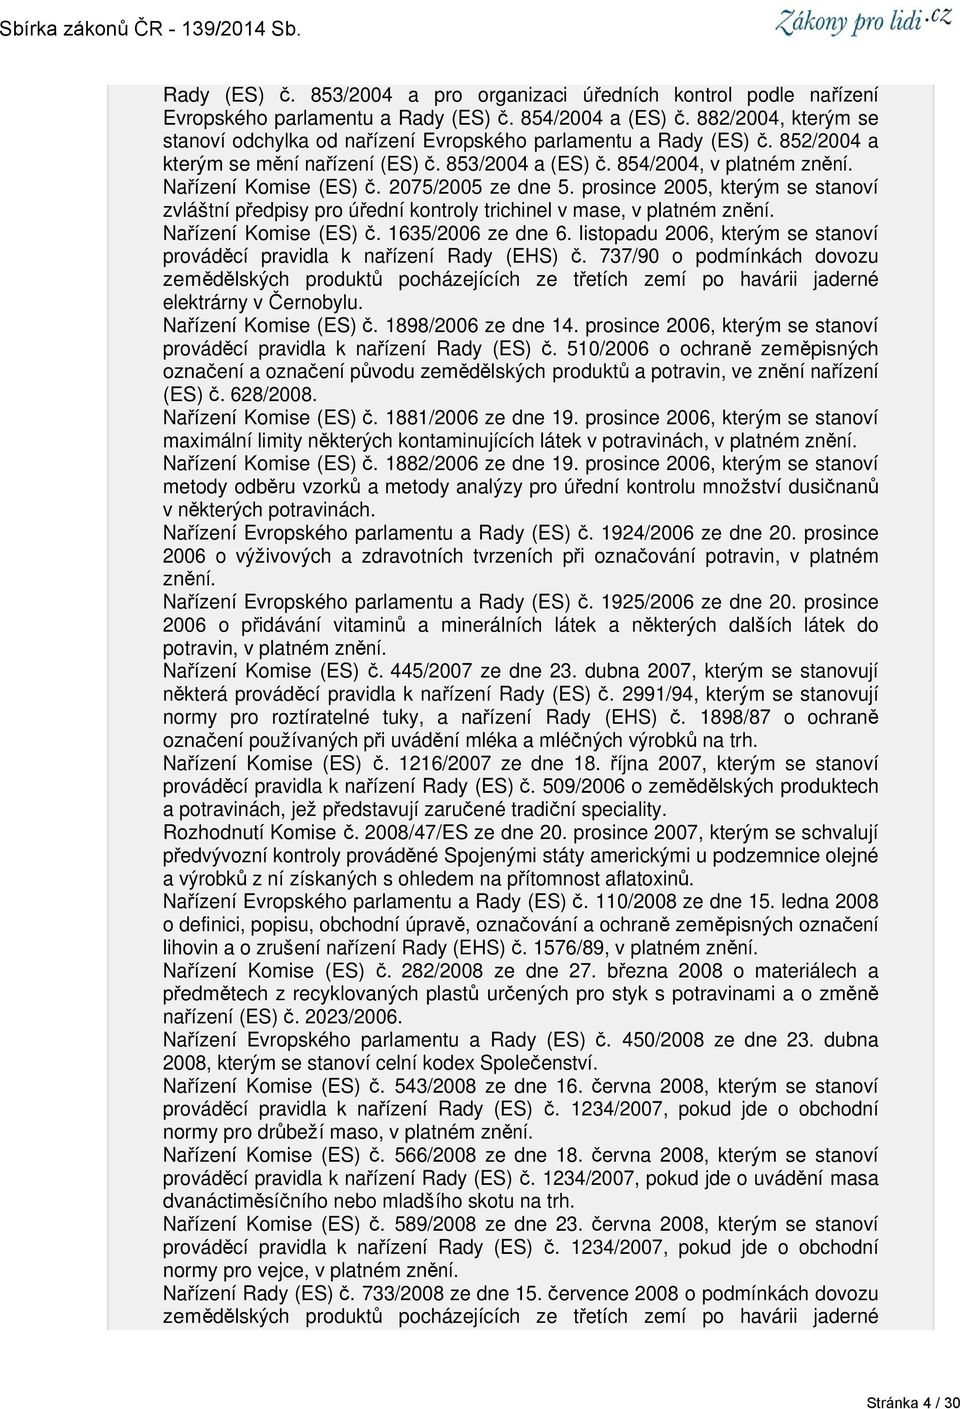 2075/2005 ze dne 5. prosince 2005, kterým se stanoví zvláštní předpisy pro úřední kontroly trichinel v mase, v platném znění. Nařízení Komise (ES) č. 1635/2006 ze dne 6.